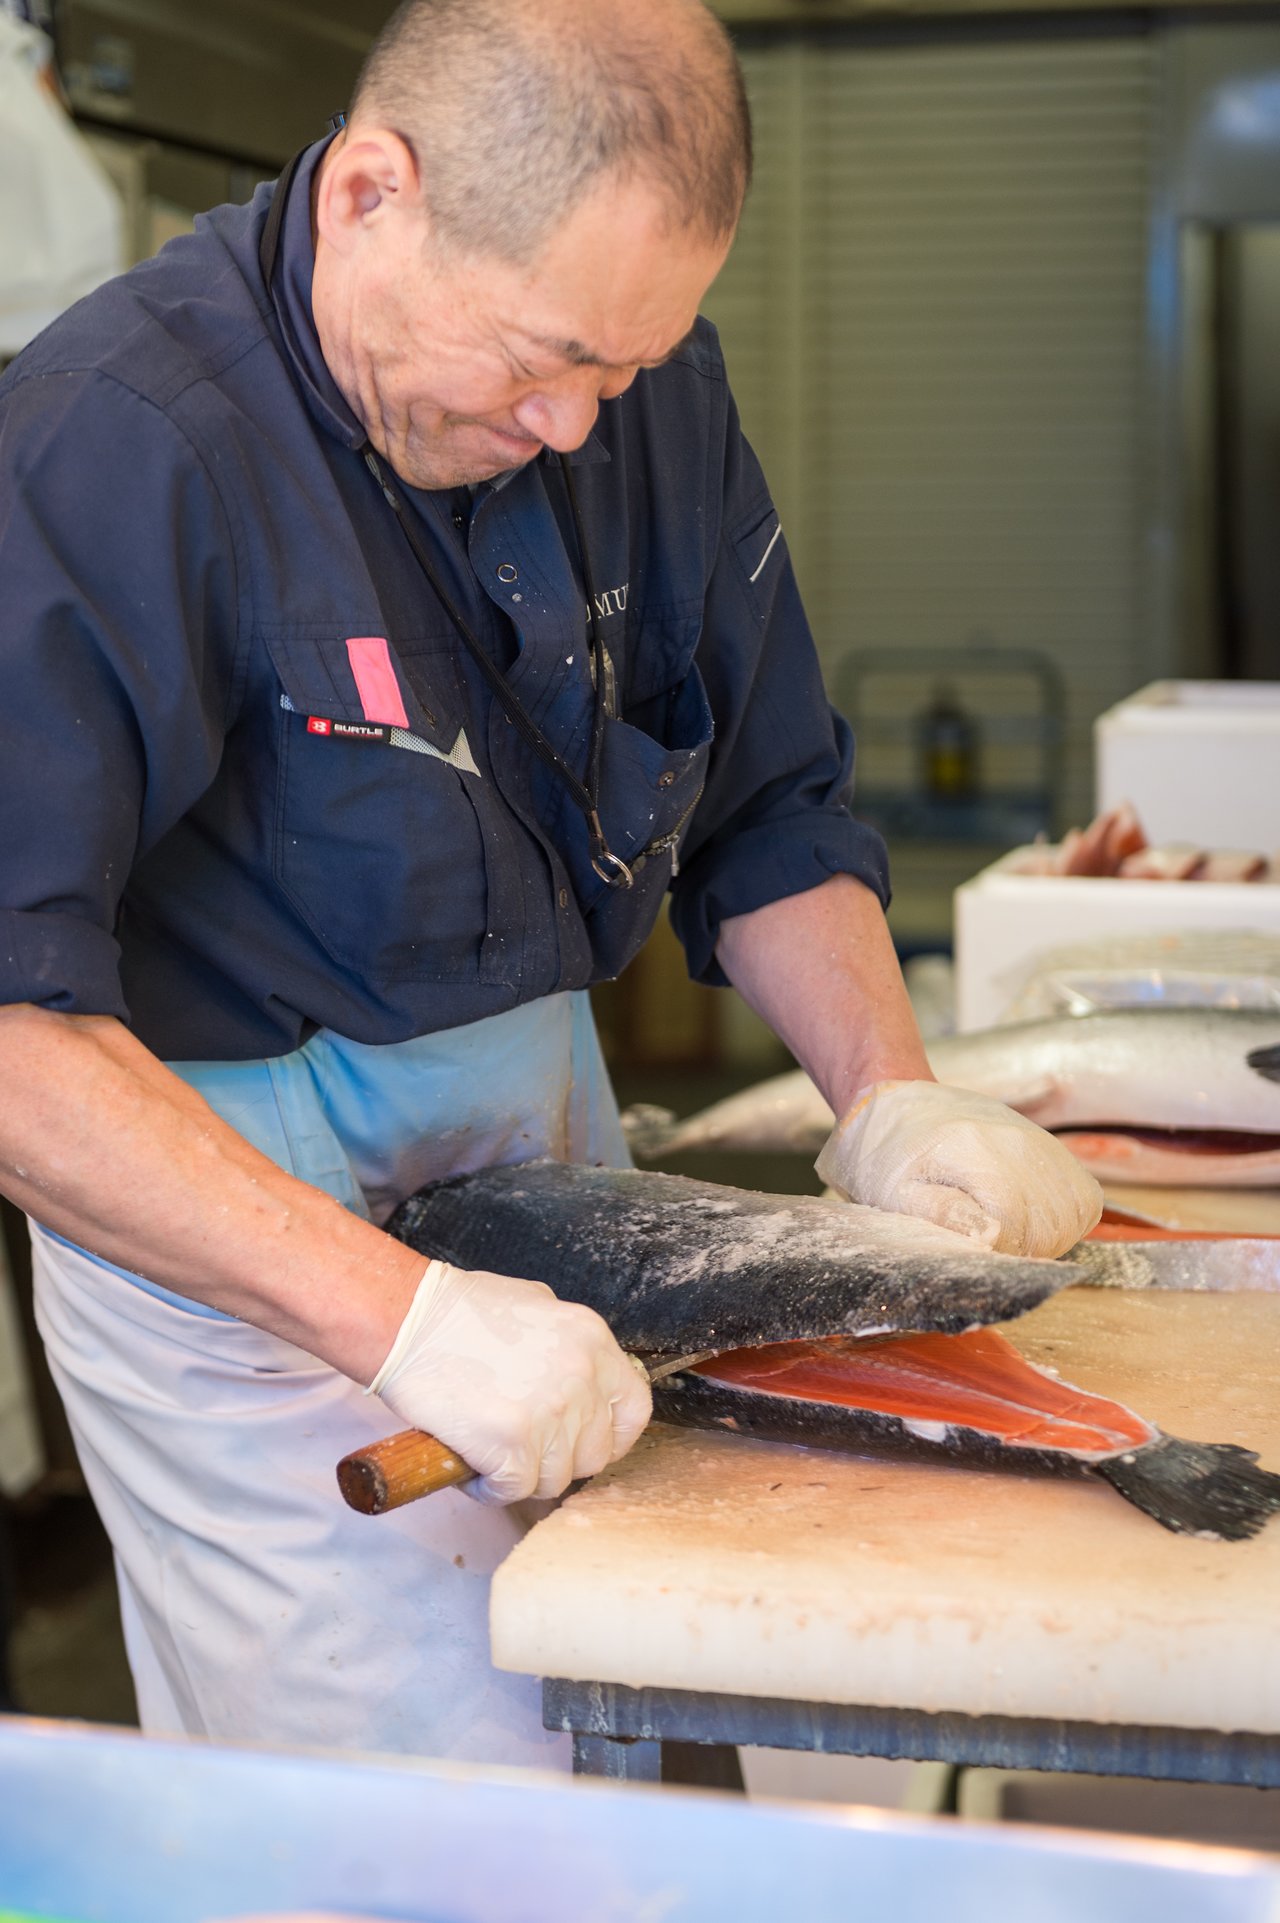 Cutting salmon